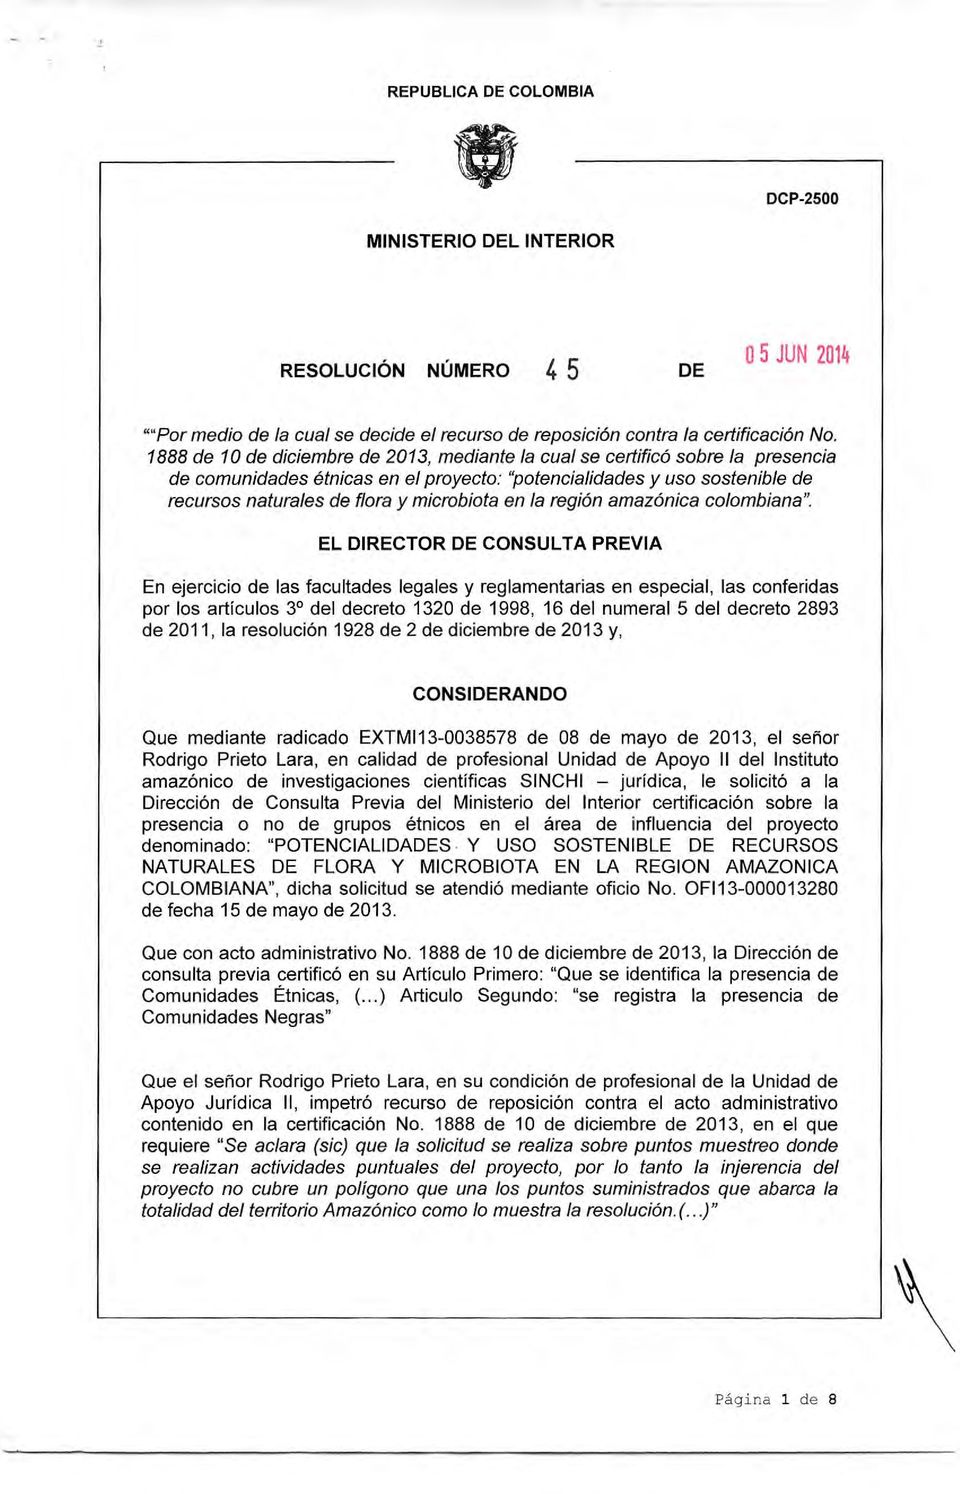 2011, la resolución 1928 de 2 de diciembre de 2013 y, CONSIRANDO Que mediante radicado EXTMI13-0038578 de 08 de mayo de 2013, el señor Rodrigo Prieto Lara, en calidad de profesional Unidad de Apoyo